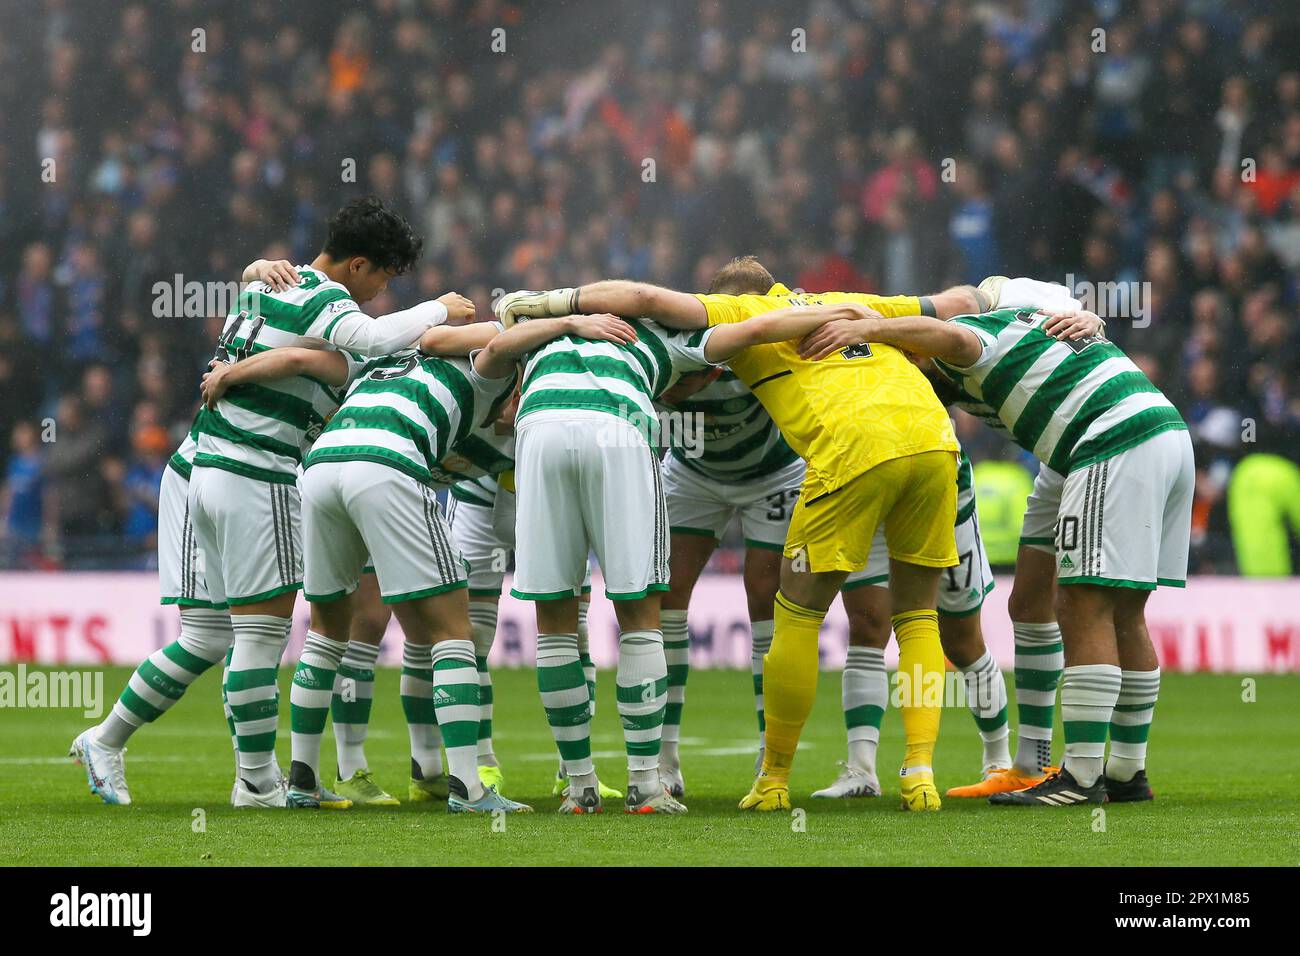 Celtic-Team in ihrem regulären Team-Meeting vor dem Spiel, aufgenommen in Hampden Park, Glasgow, Schottland, Großbritannien Stockfoto